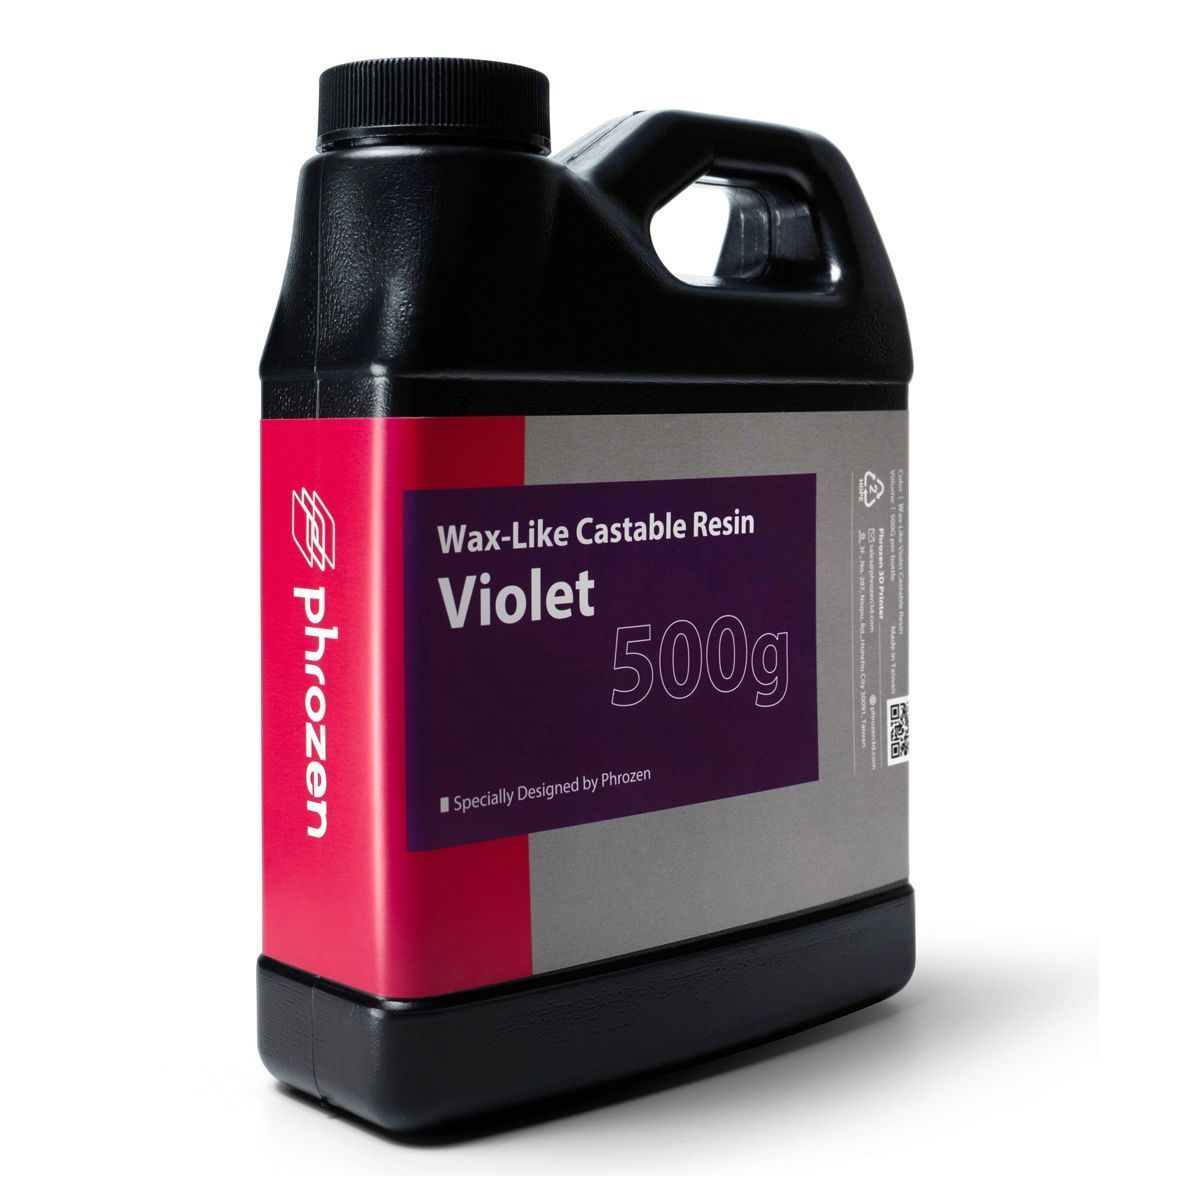 Фотополимер Phrozen Wax-like Castable Violet, фиолетовый (0,5 кг)